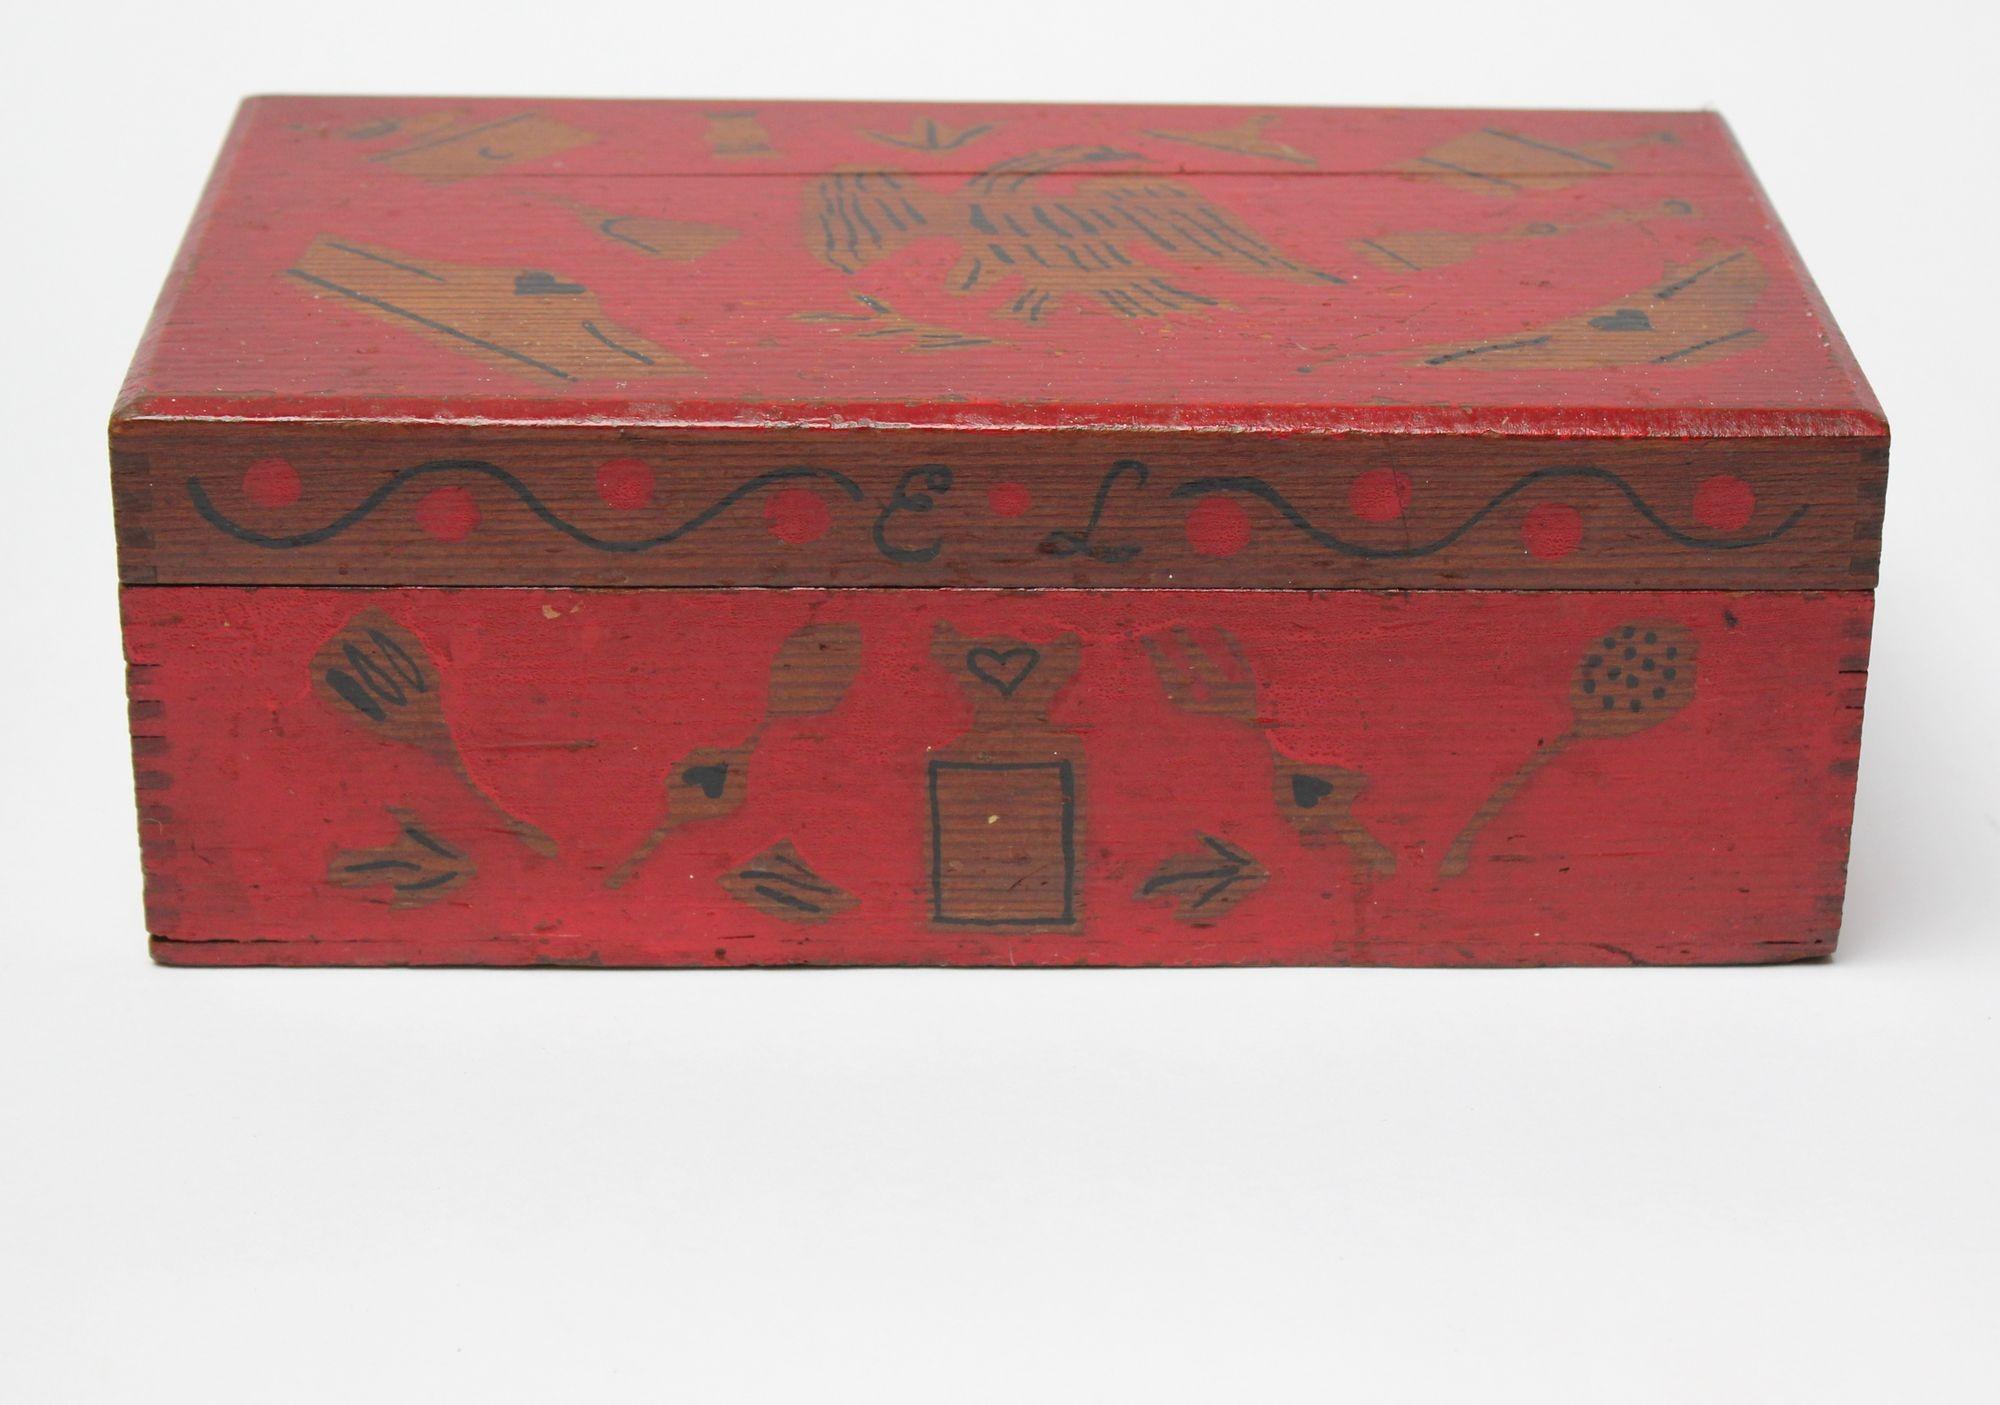 Boîte décorative d'art populaire avec un motif d'aigle peint en rouge (vers 1910-1920, États-Unis). Le couvercle à charnière s'ouvre pour révéler un compartiment de rangement divisé, parfait pour abriter les petits accessoires (bijoux, boutons de